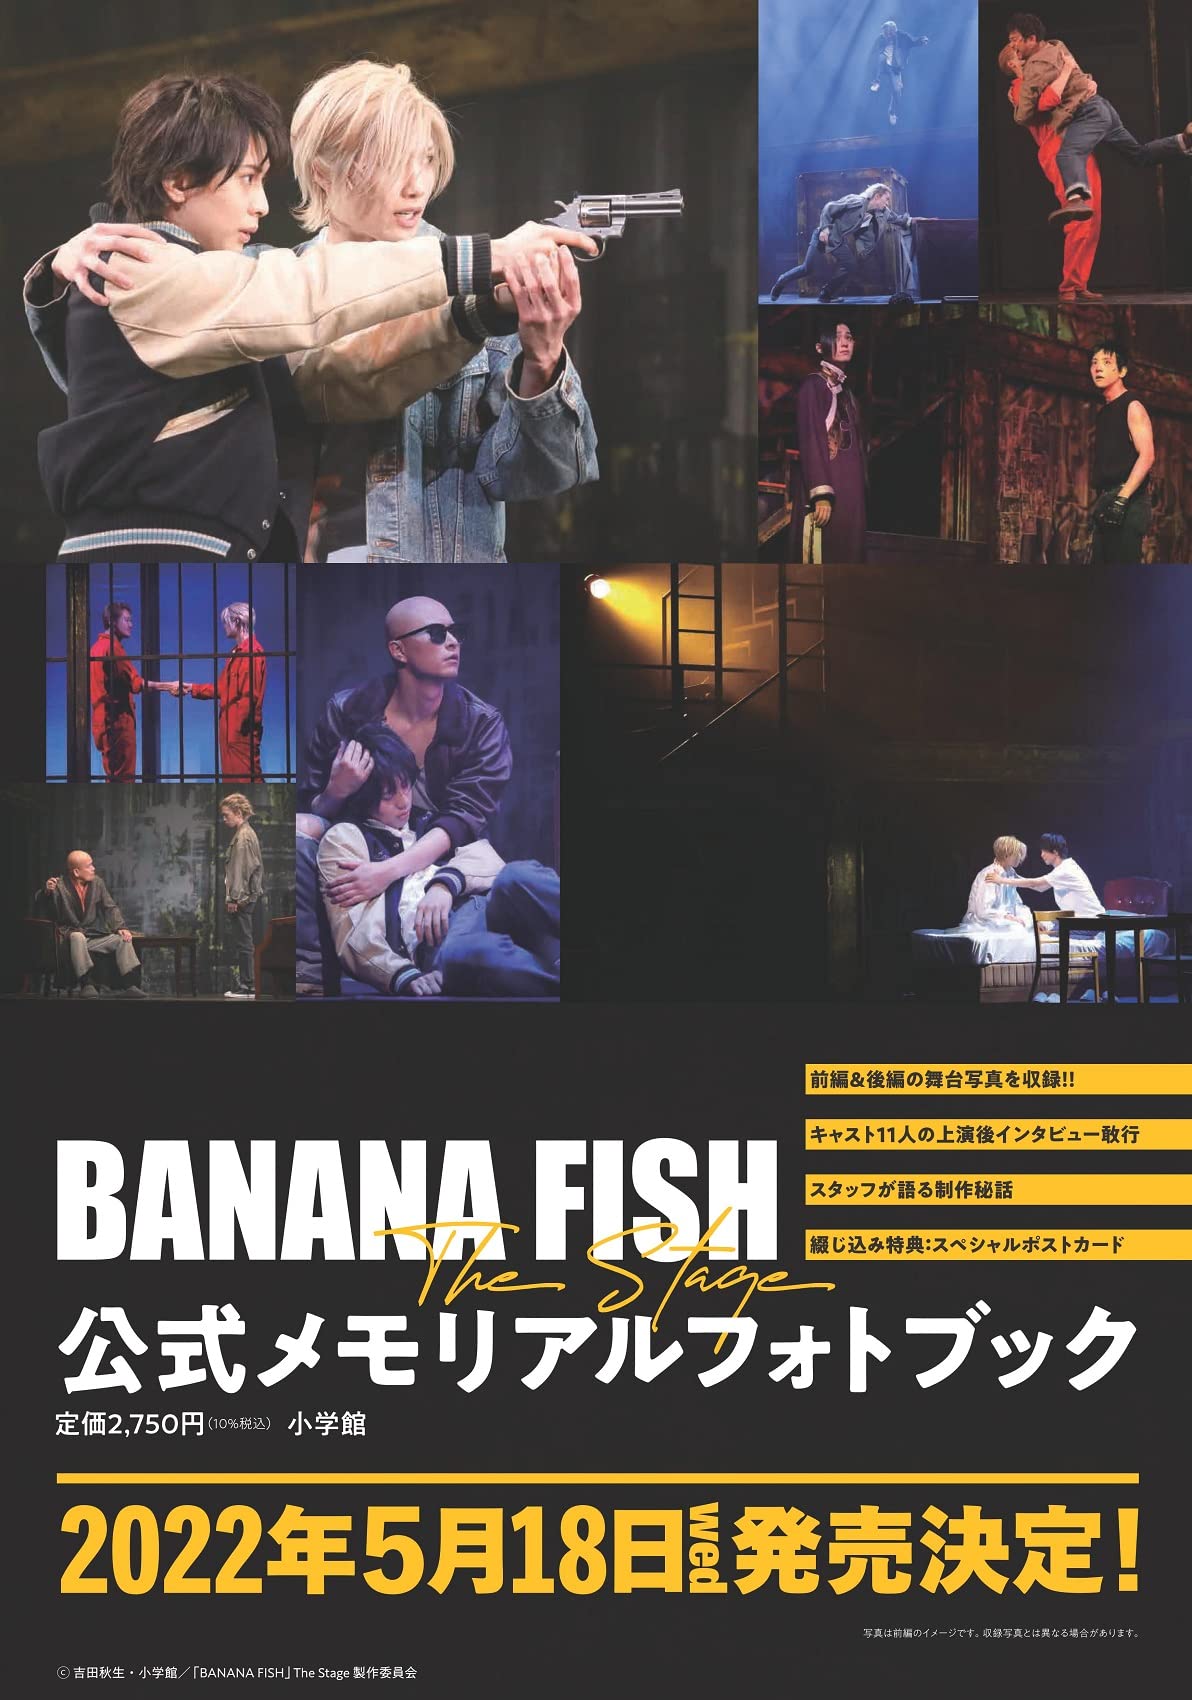 「BANANA FISH」The Stage公式メモリアルフォトブック